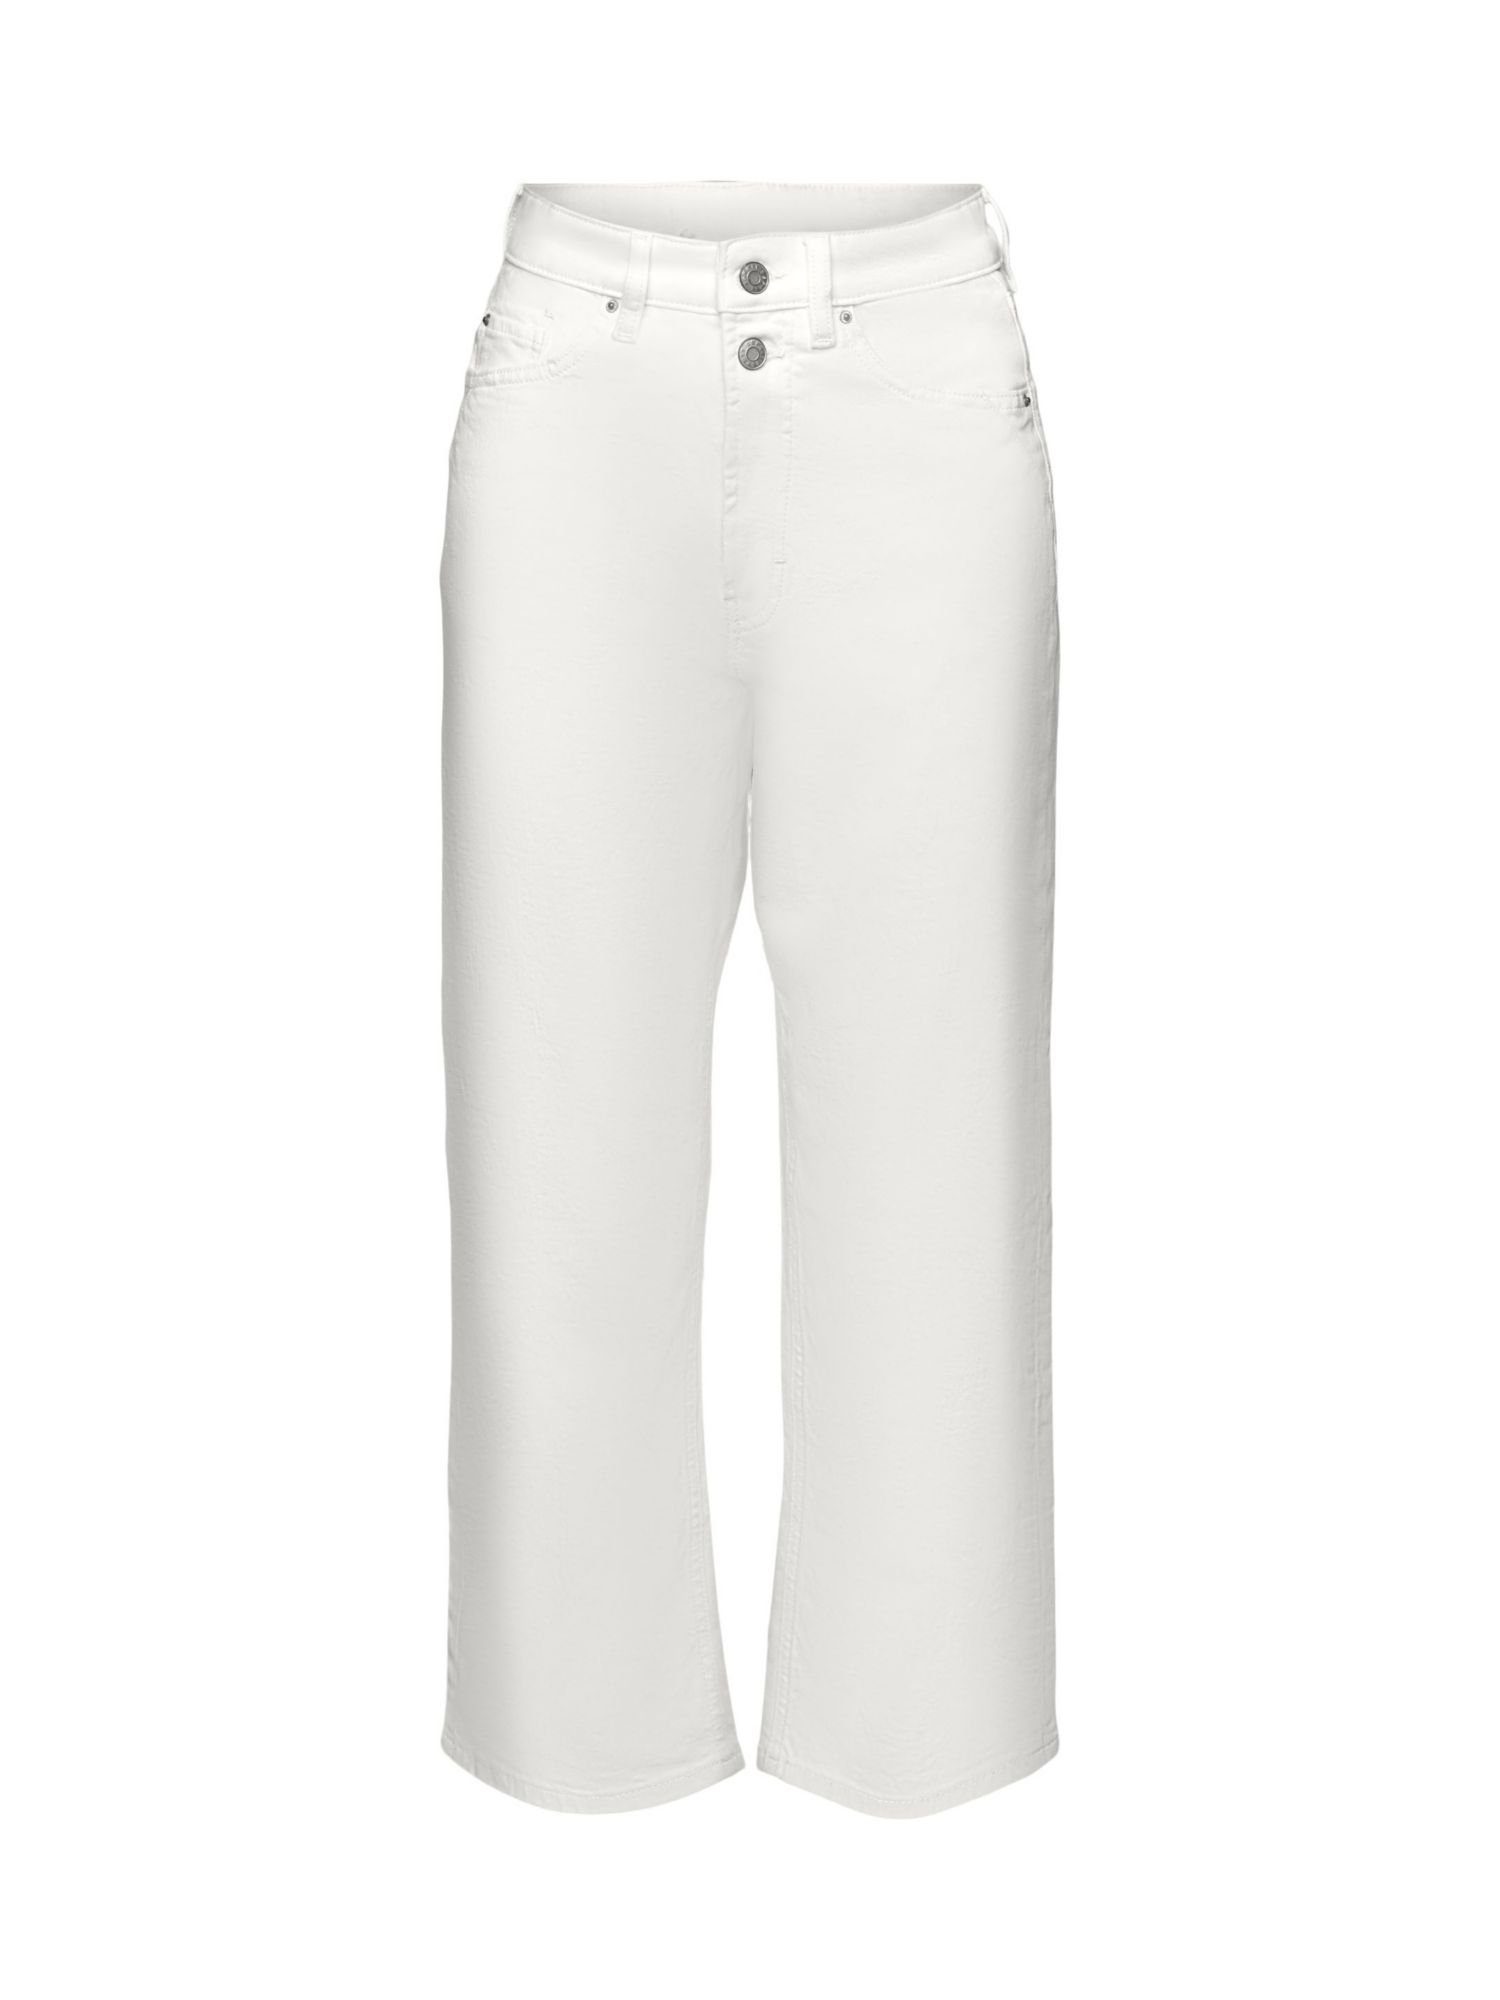 Esprit 7/8-Jeans Baumwoll-Jeans mit geradem Bein